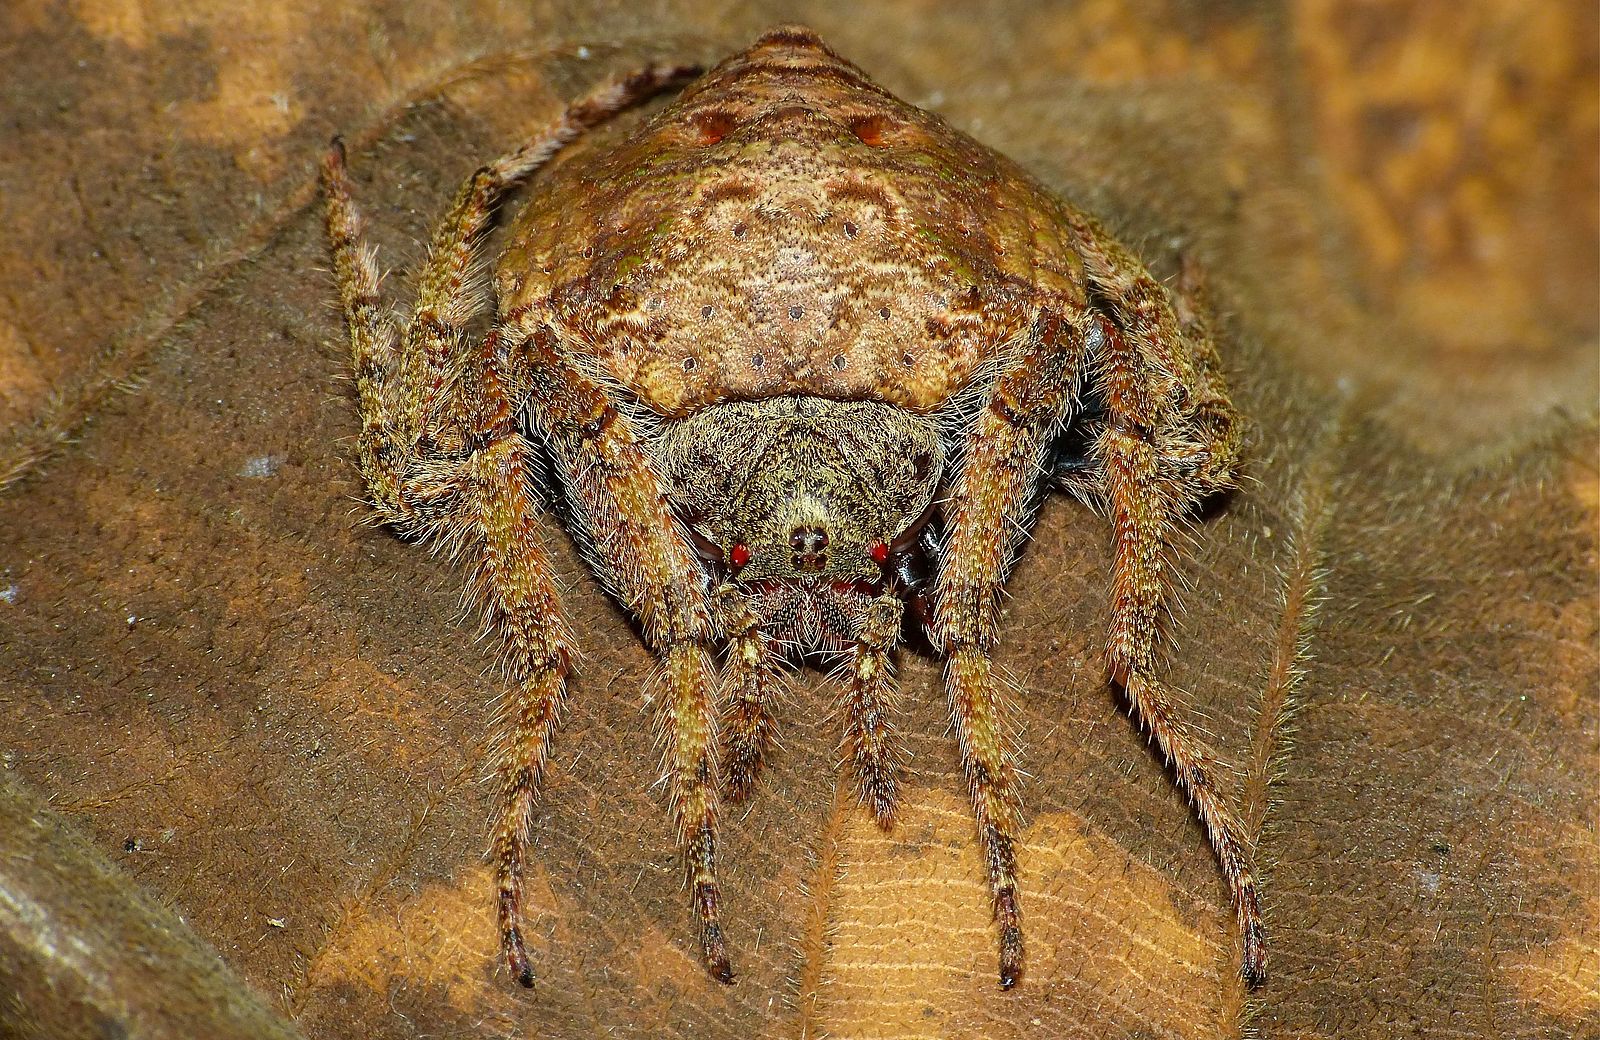 L'araignée enroulante a la capacité d'aplatir son corps et de l'enrouler autour de branches ou de troncs d'arbre.